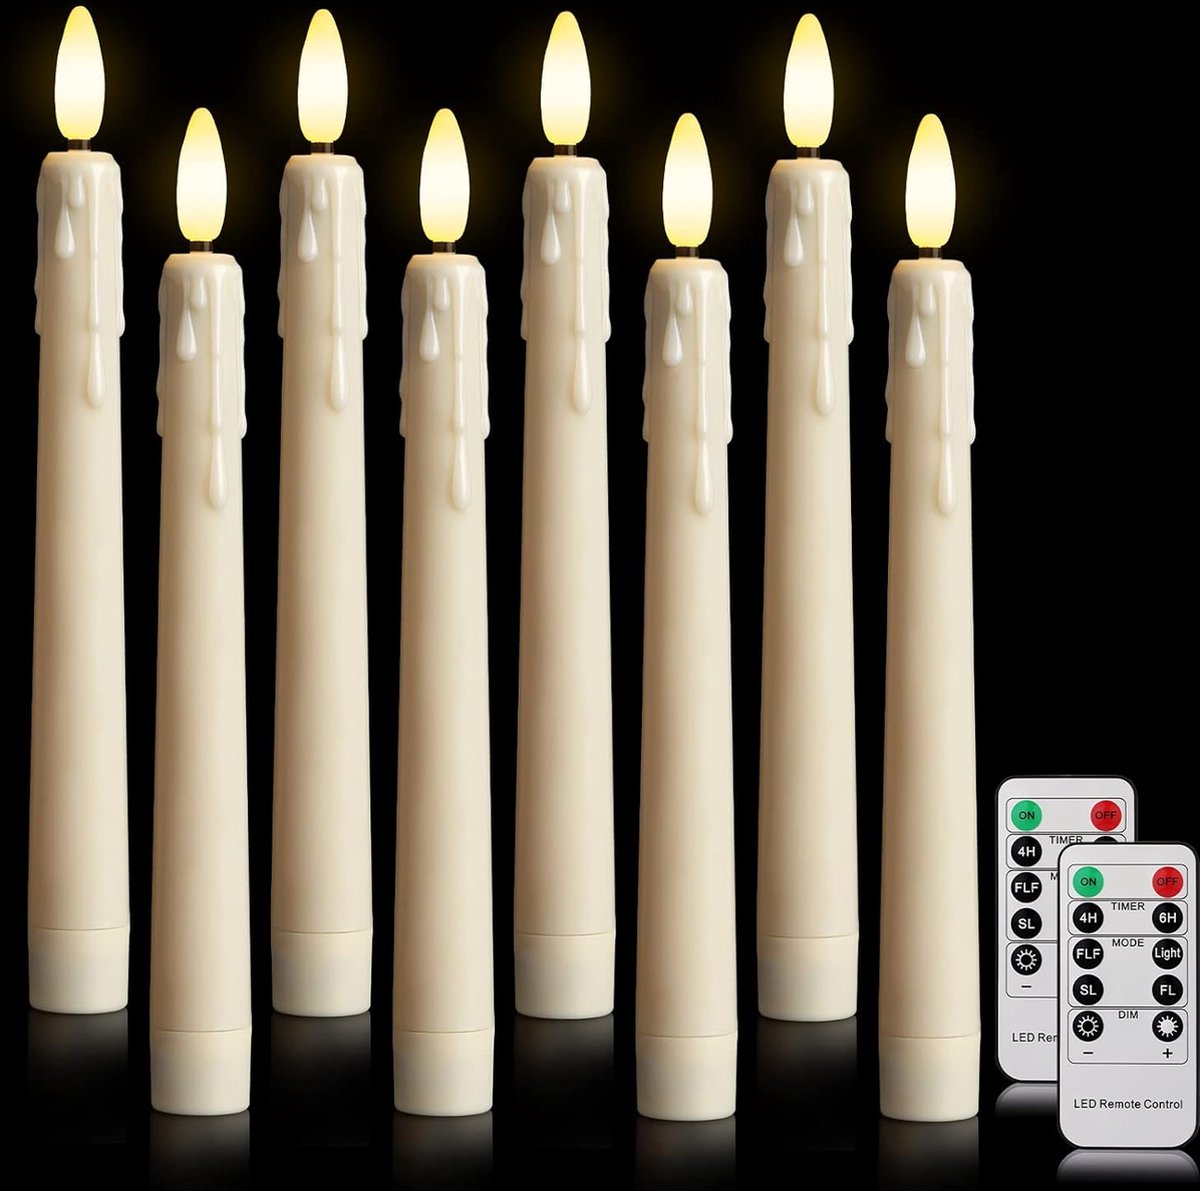 Bougies Led noires/blanches avec flamme vacillante, sans flamme